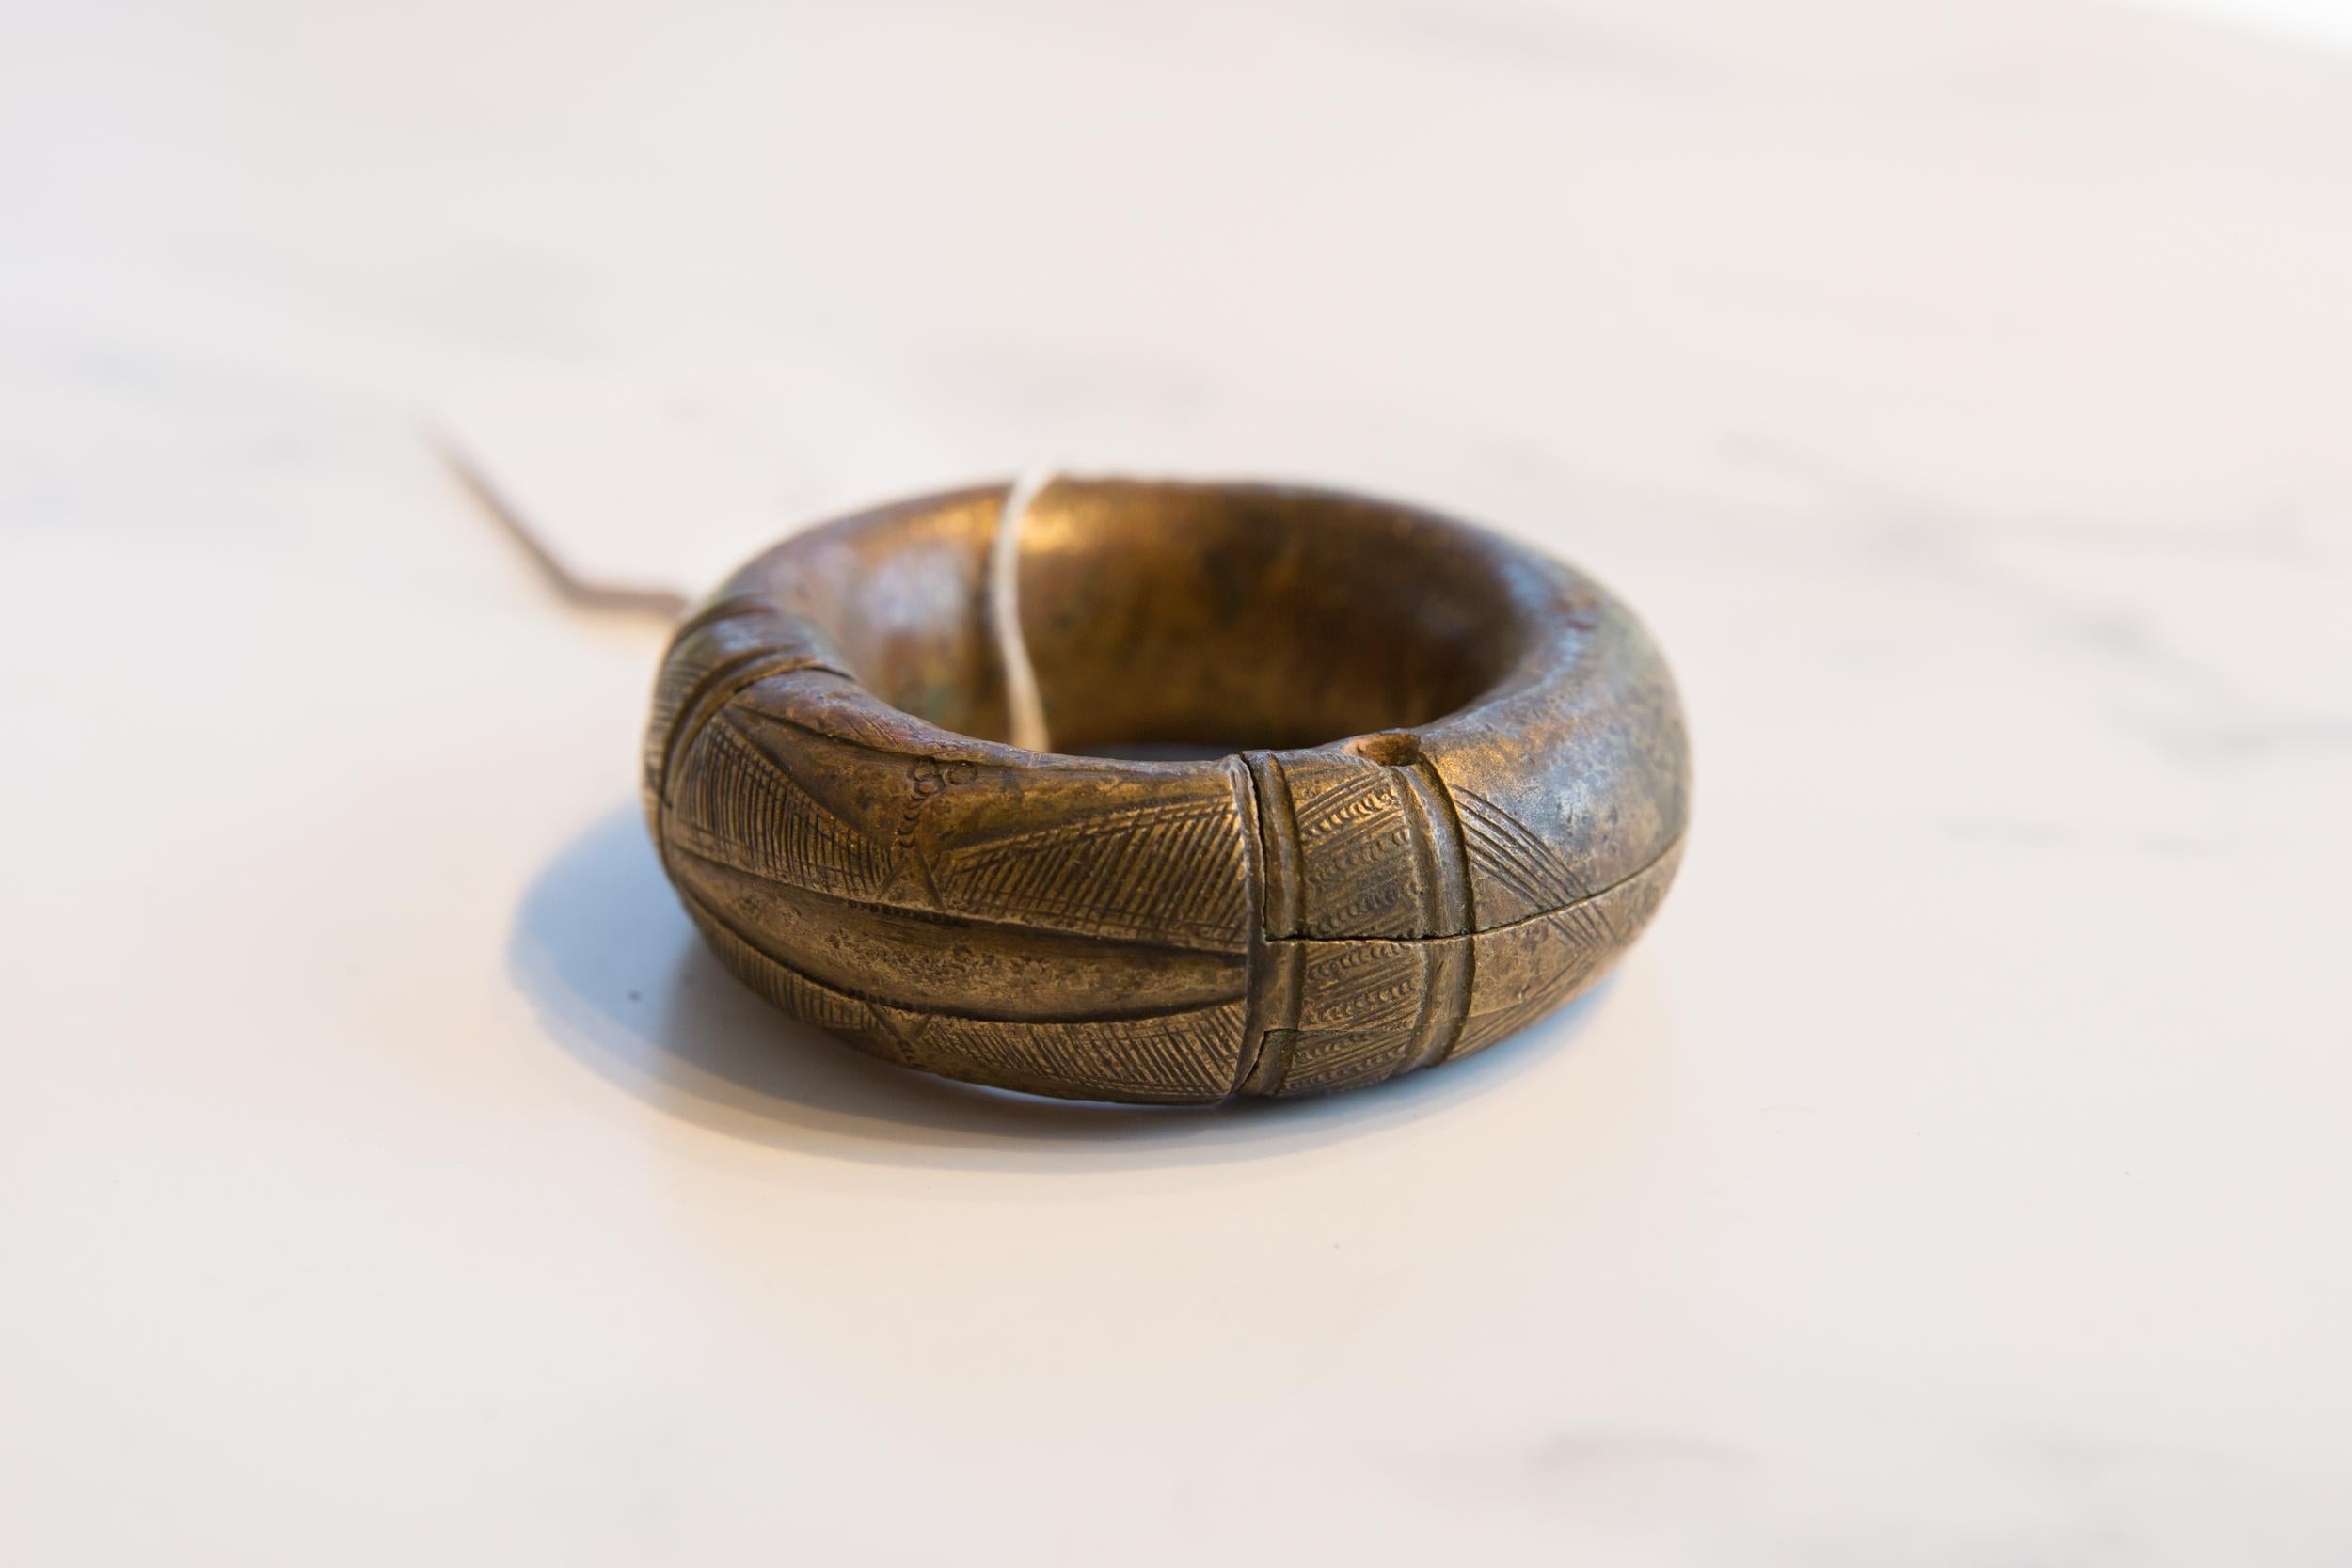 : : Petit bracelet africain ancien en bronze épais, fait à la main, avec des détails géométriques. Exceptionnel bracelet ancien circa 19ème siècle ou plus ancien, peut-être utilisé comme monnaie. Cette pièce est un objet de collection unique, qui a